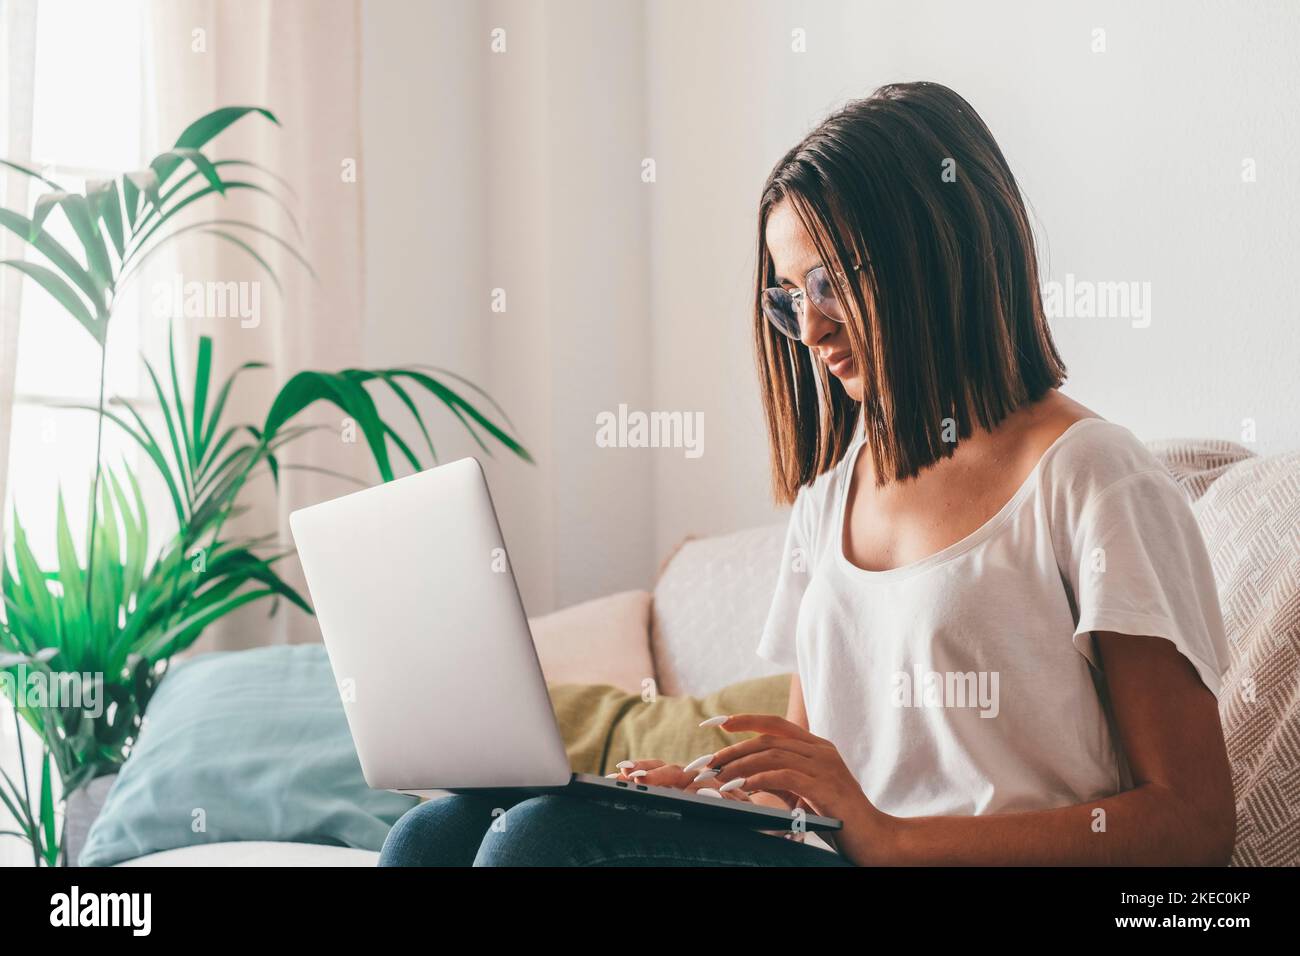 Giovane donna felice negli occhiali che scrivono usando il laptop mentre si siede sul divano nel soggiorno della sua casa. Bella donna che trascorre il tempo libero utilizzando il computer portatile. Freelance che lavora da casa Foto Stock